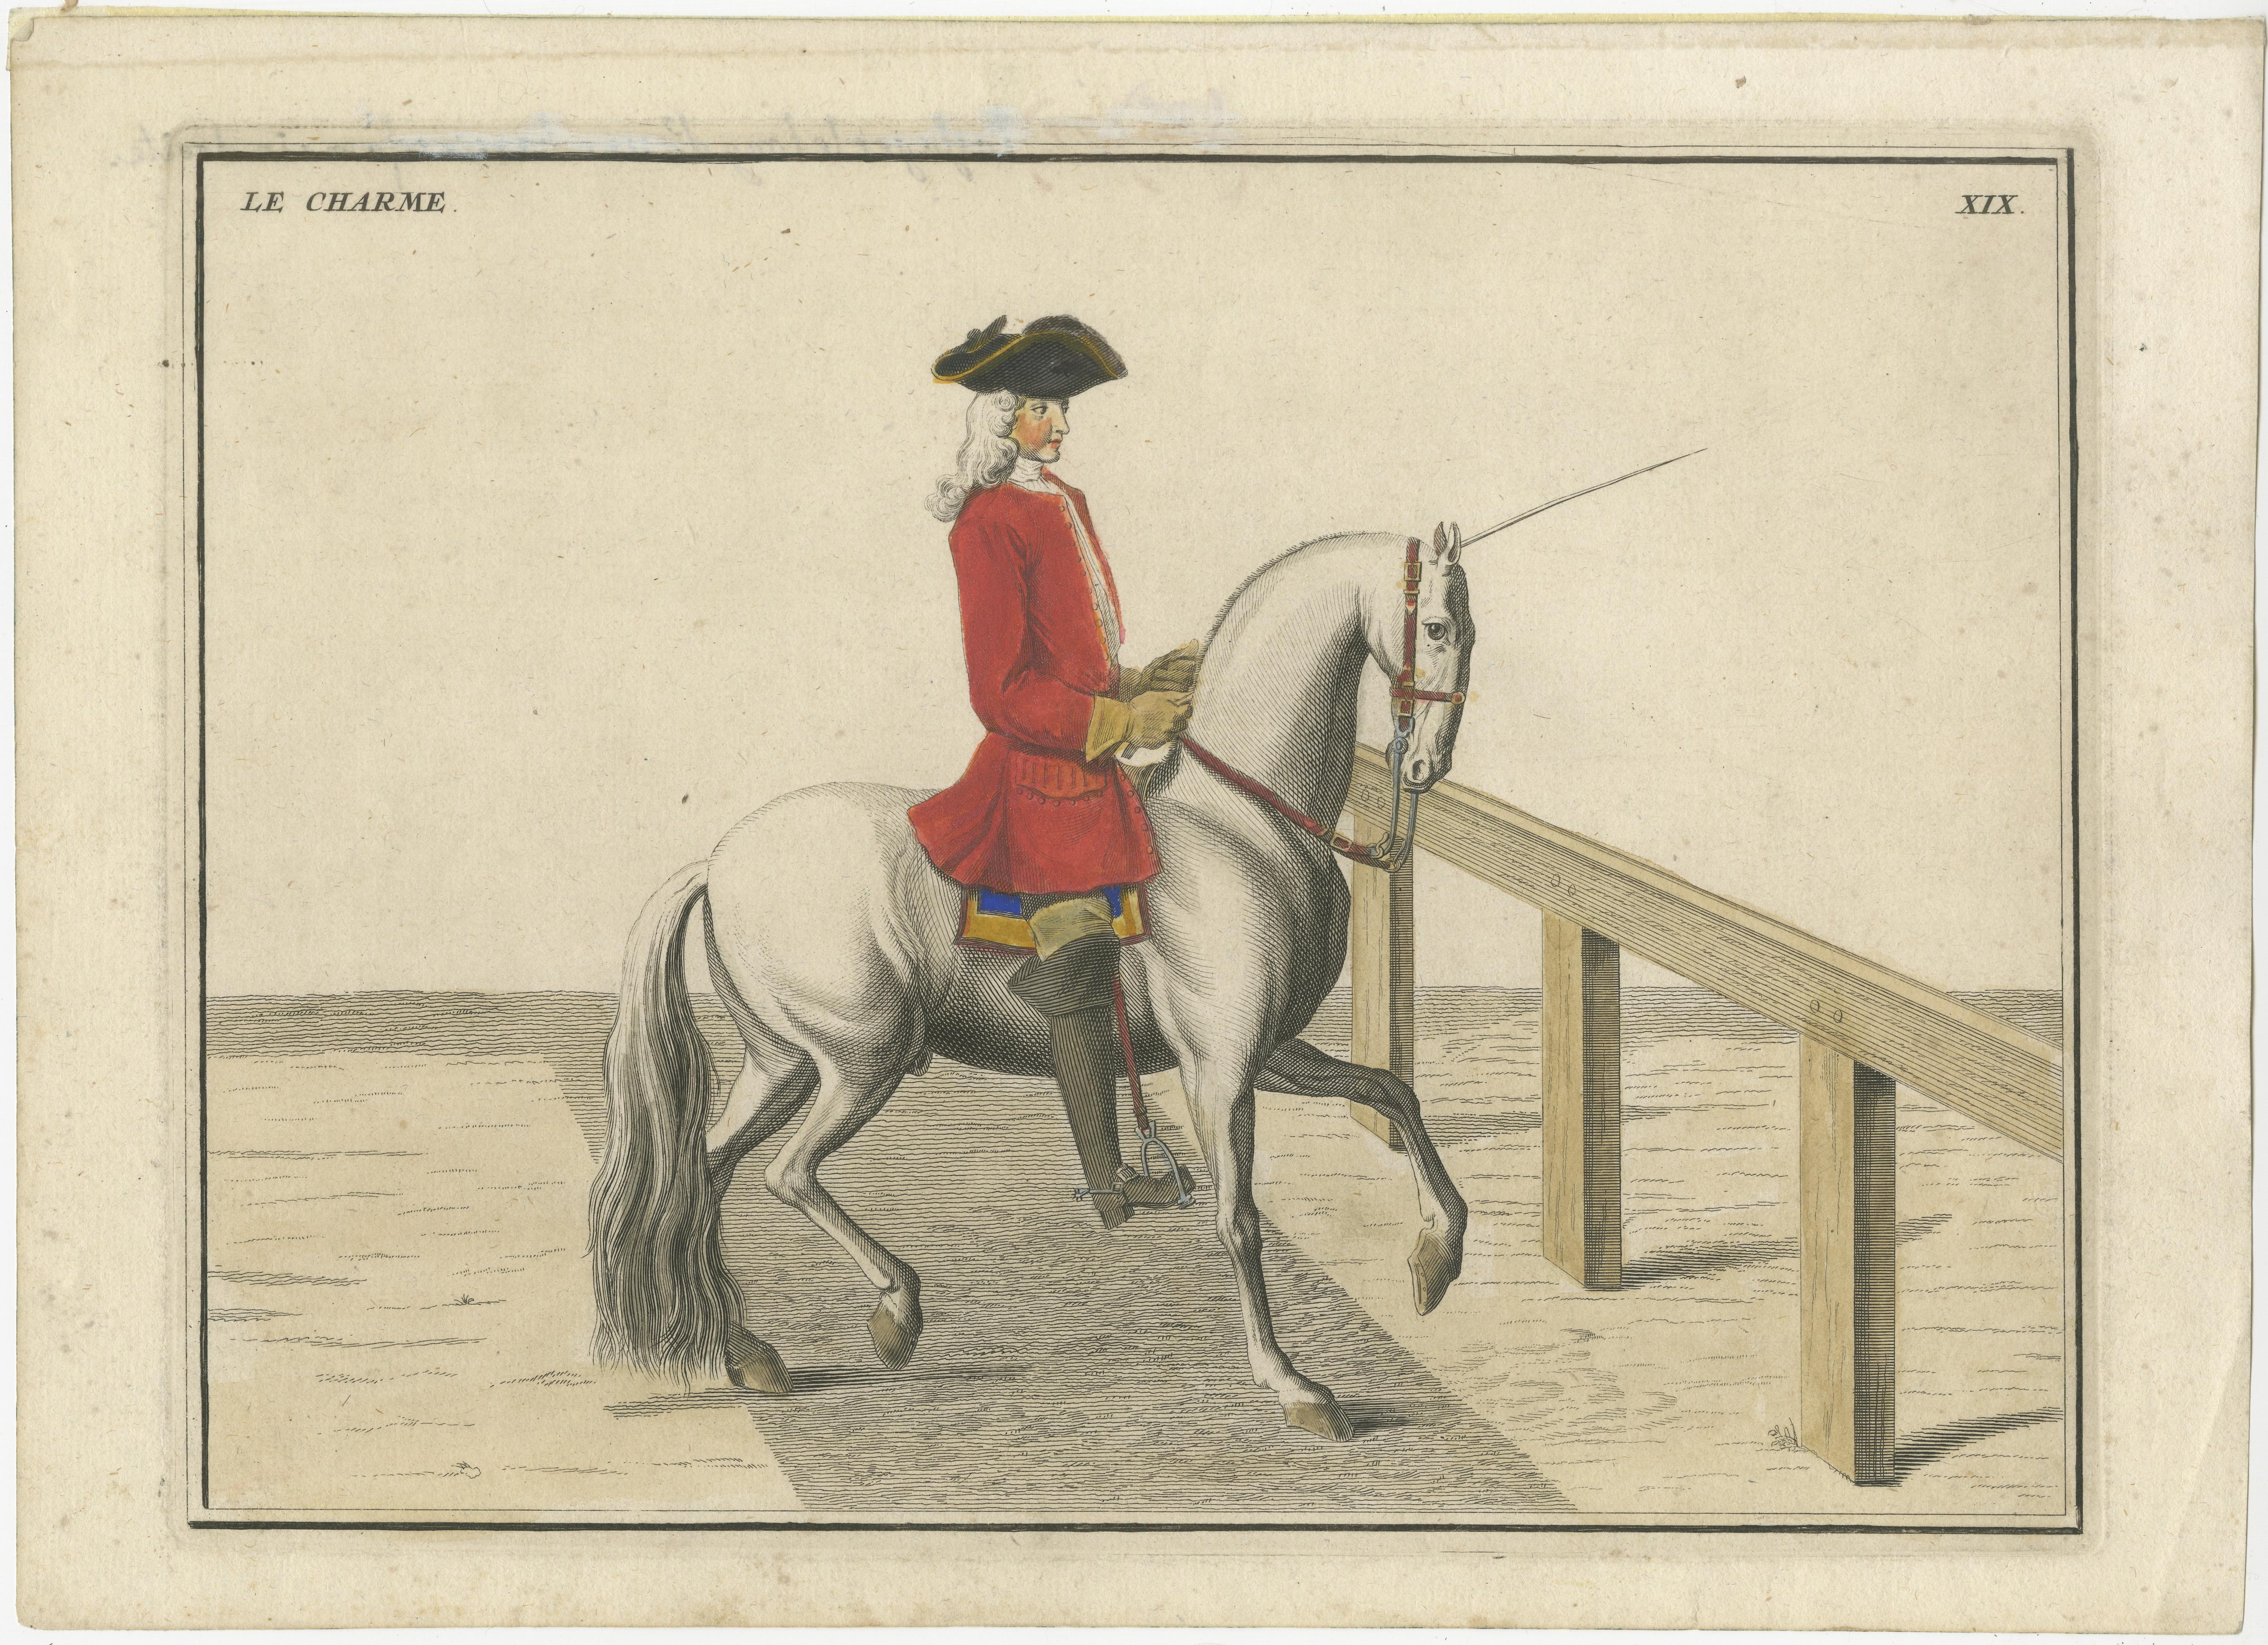 Set of 2 antique horse riding prints. These prints originate from 'Description Du Manége Moderne : Dans Sa Perfection, Expliqué par des Lecons necessaires, et representé par des Figures exacates, depuis l'Assiette de l'homme à Cheval, jusquà